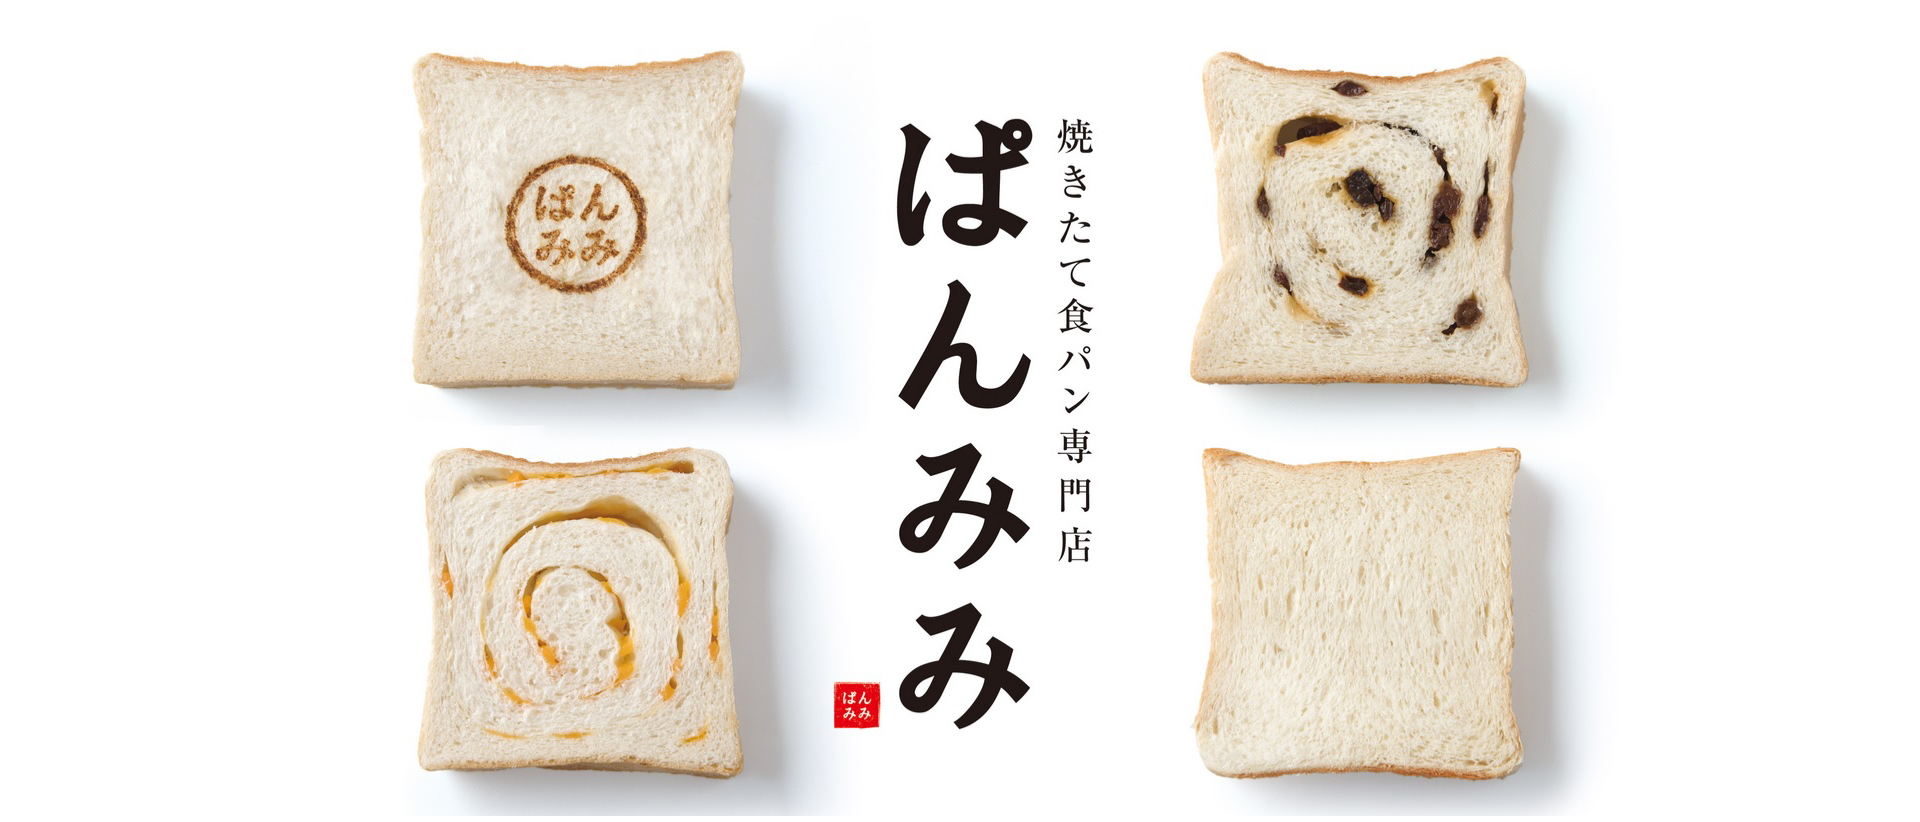 焼きたて食パン専門店『ぱんみみ』&『みみCafé』